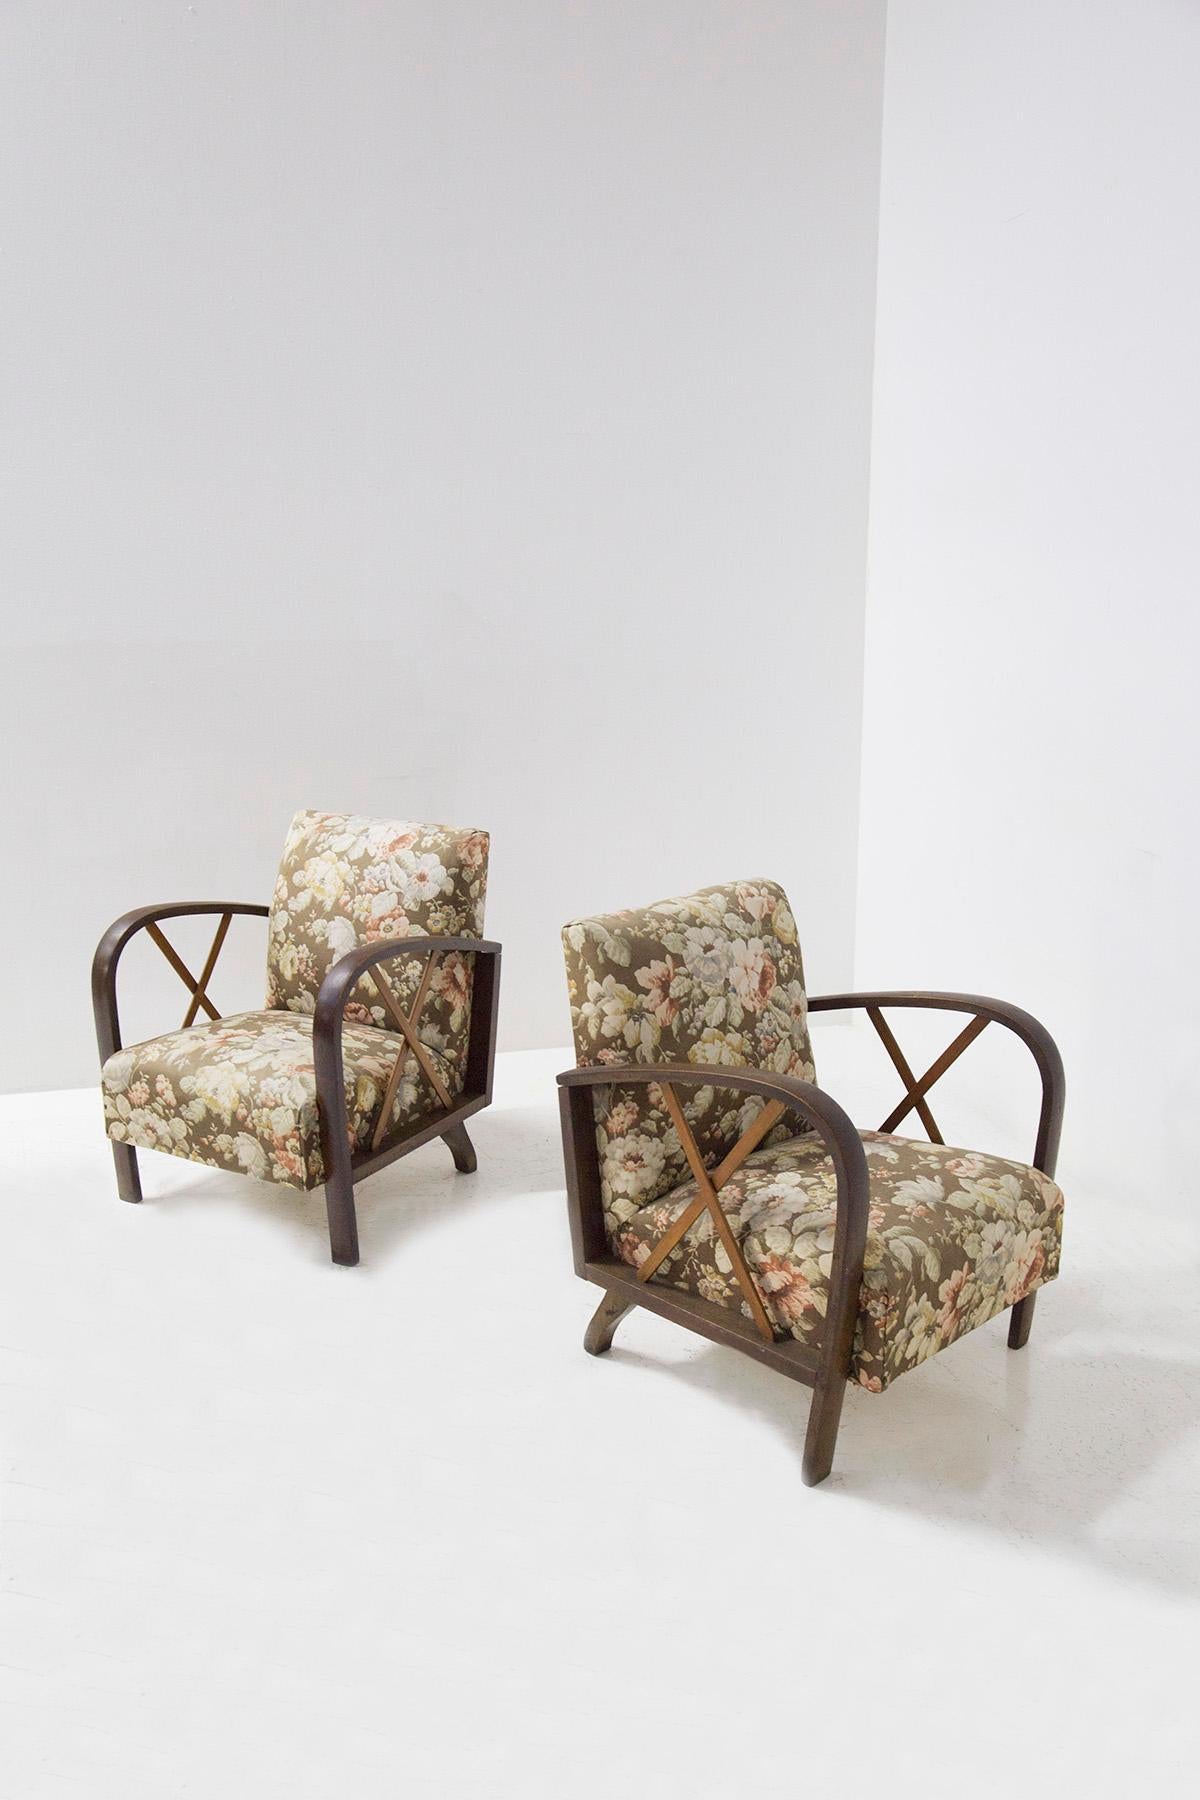 Elégante paire de fauteuils italiens attribués à Paolo Buffa des années 1950. Les fauteuils sont dans leur état original de l'époque, également le tissu est original de l'époque avec un tissage floral. La structure est en bois et sa particularité se